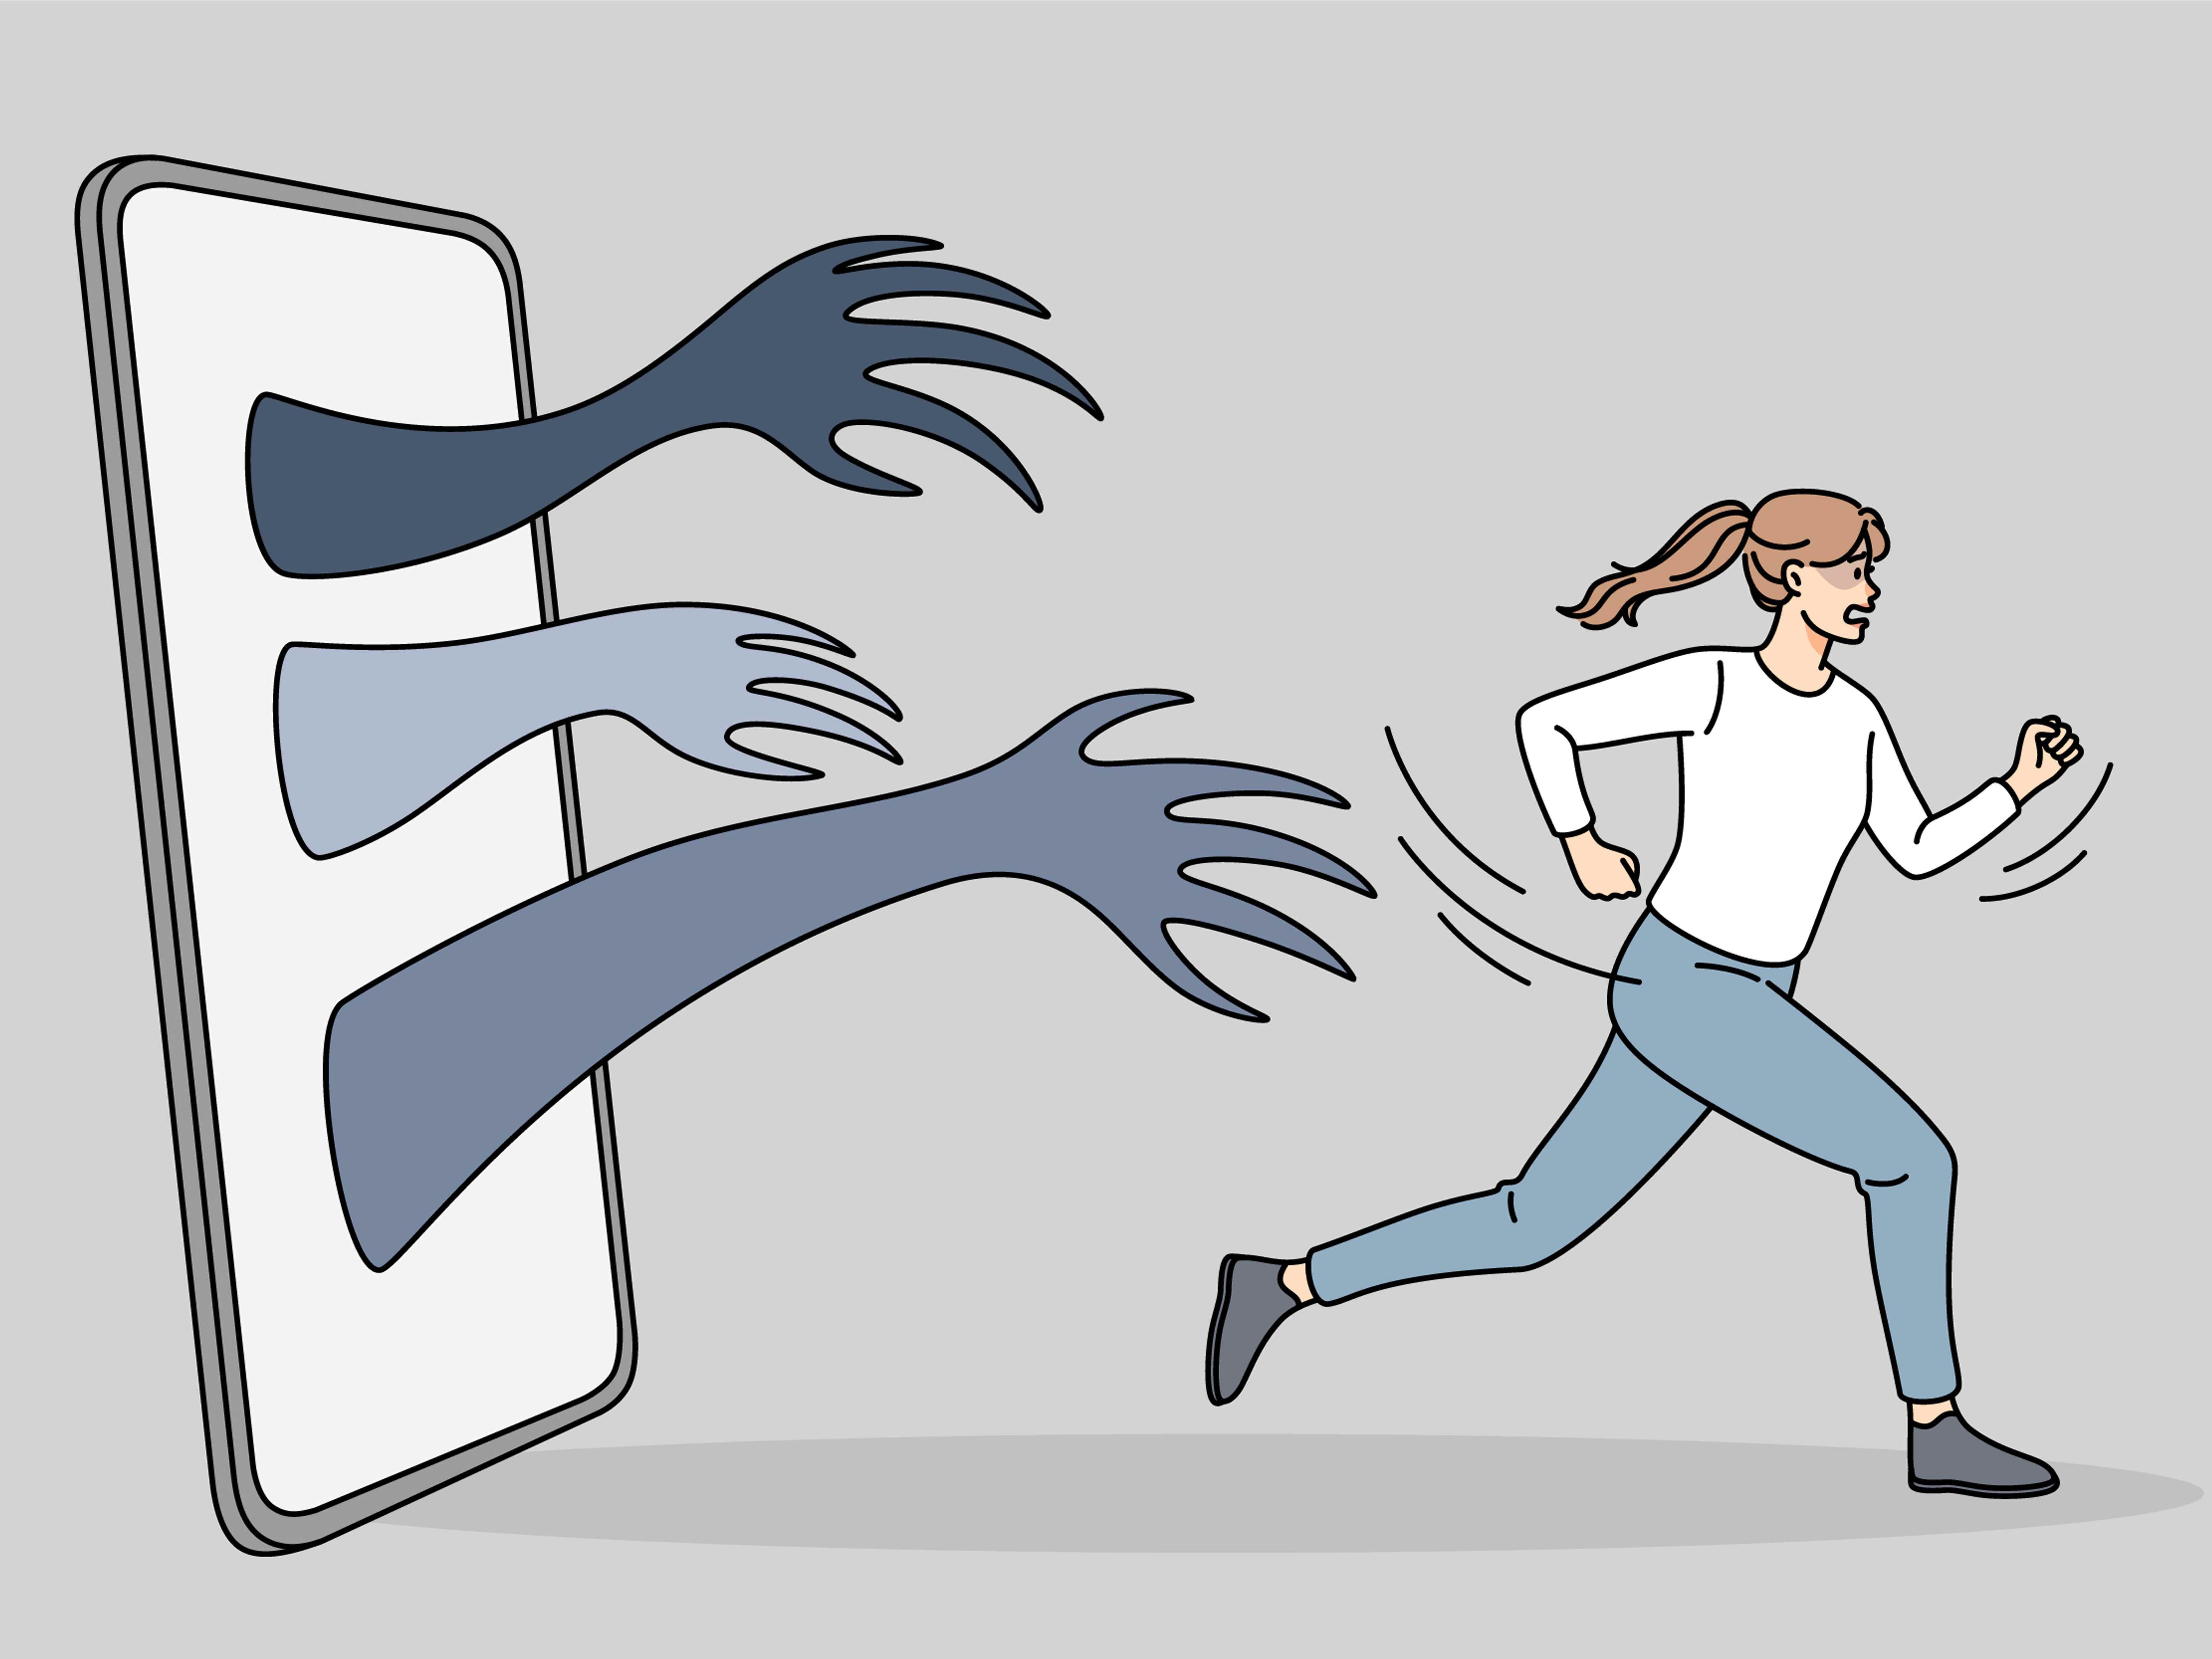 Verängstigte Frau rennt vor Händen davon, die vom Handy kommen.